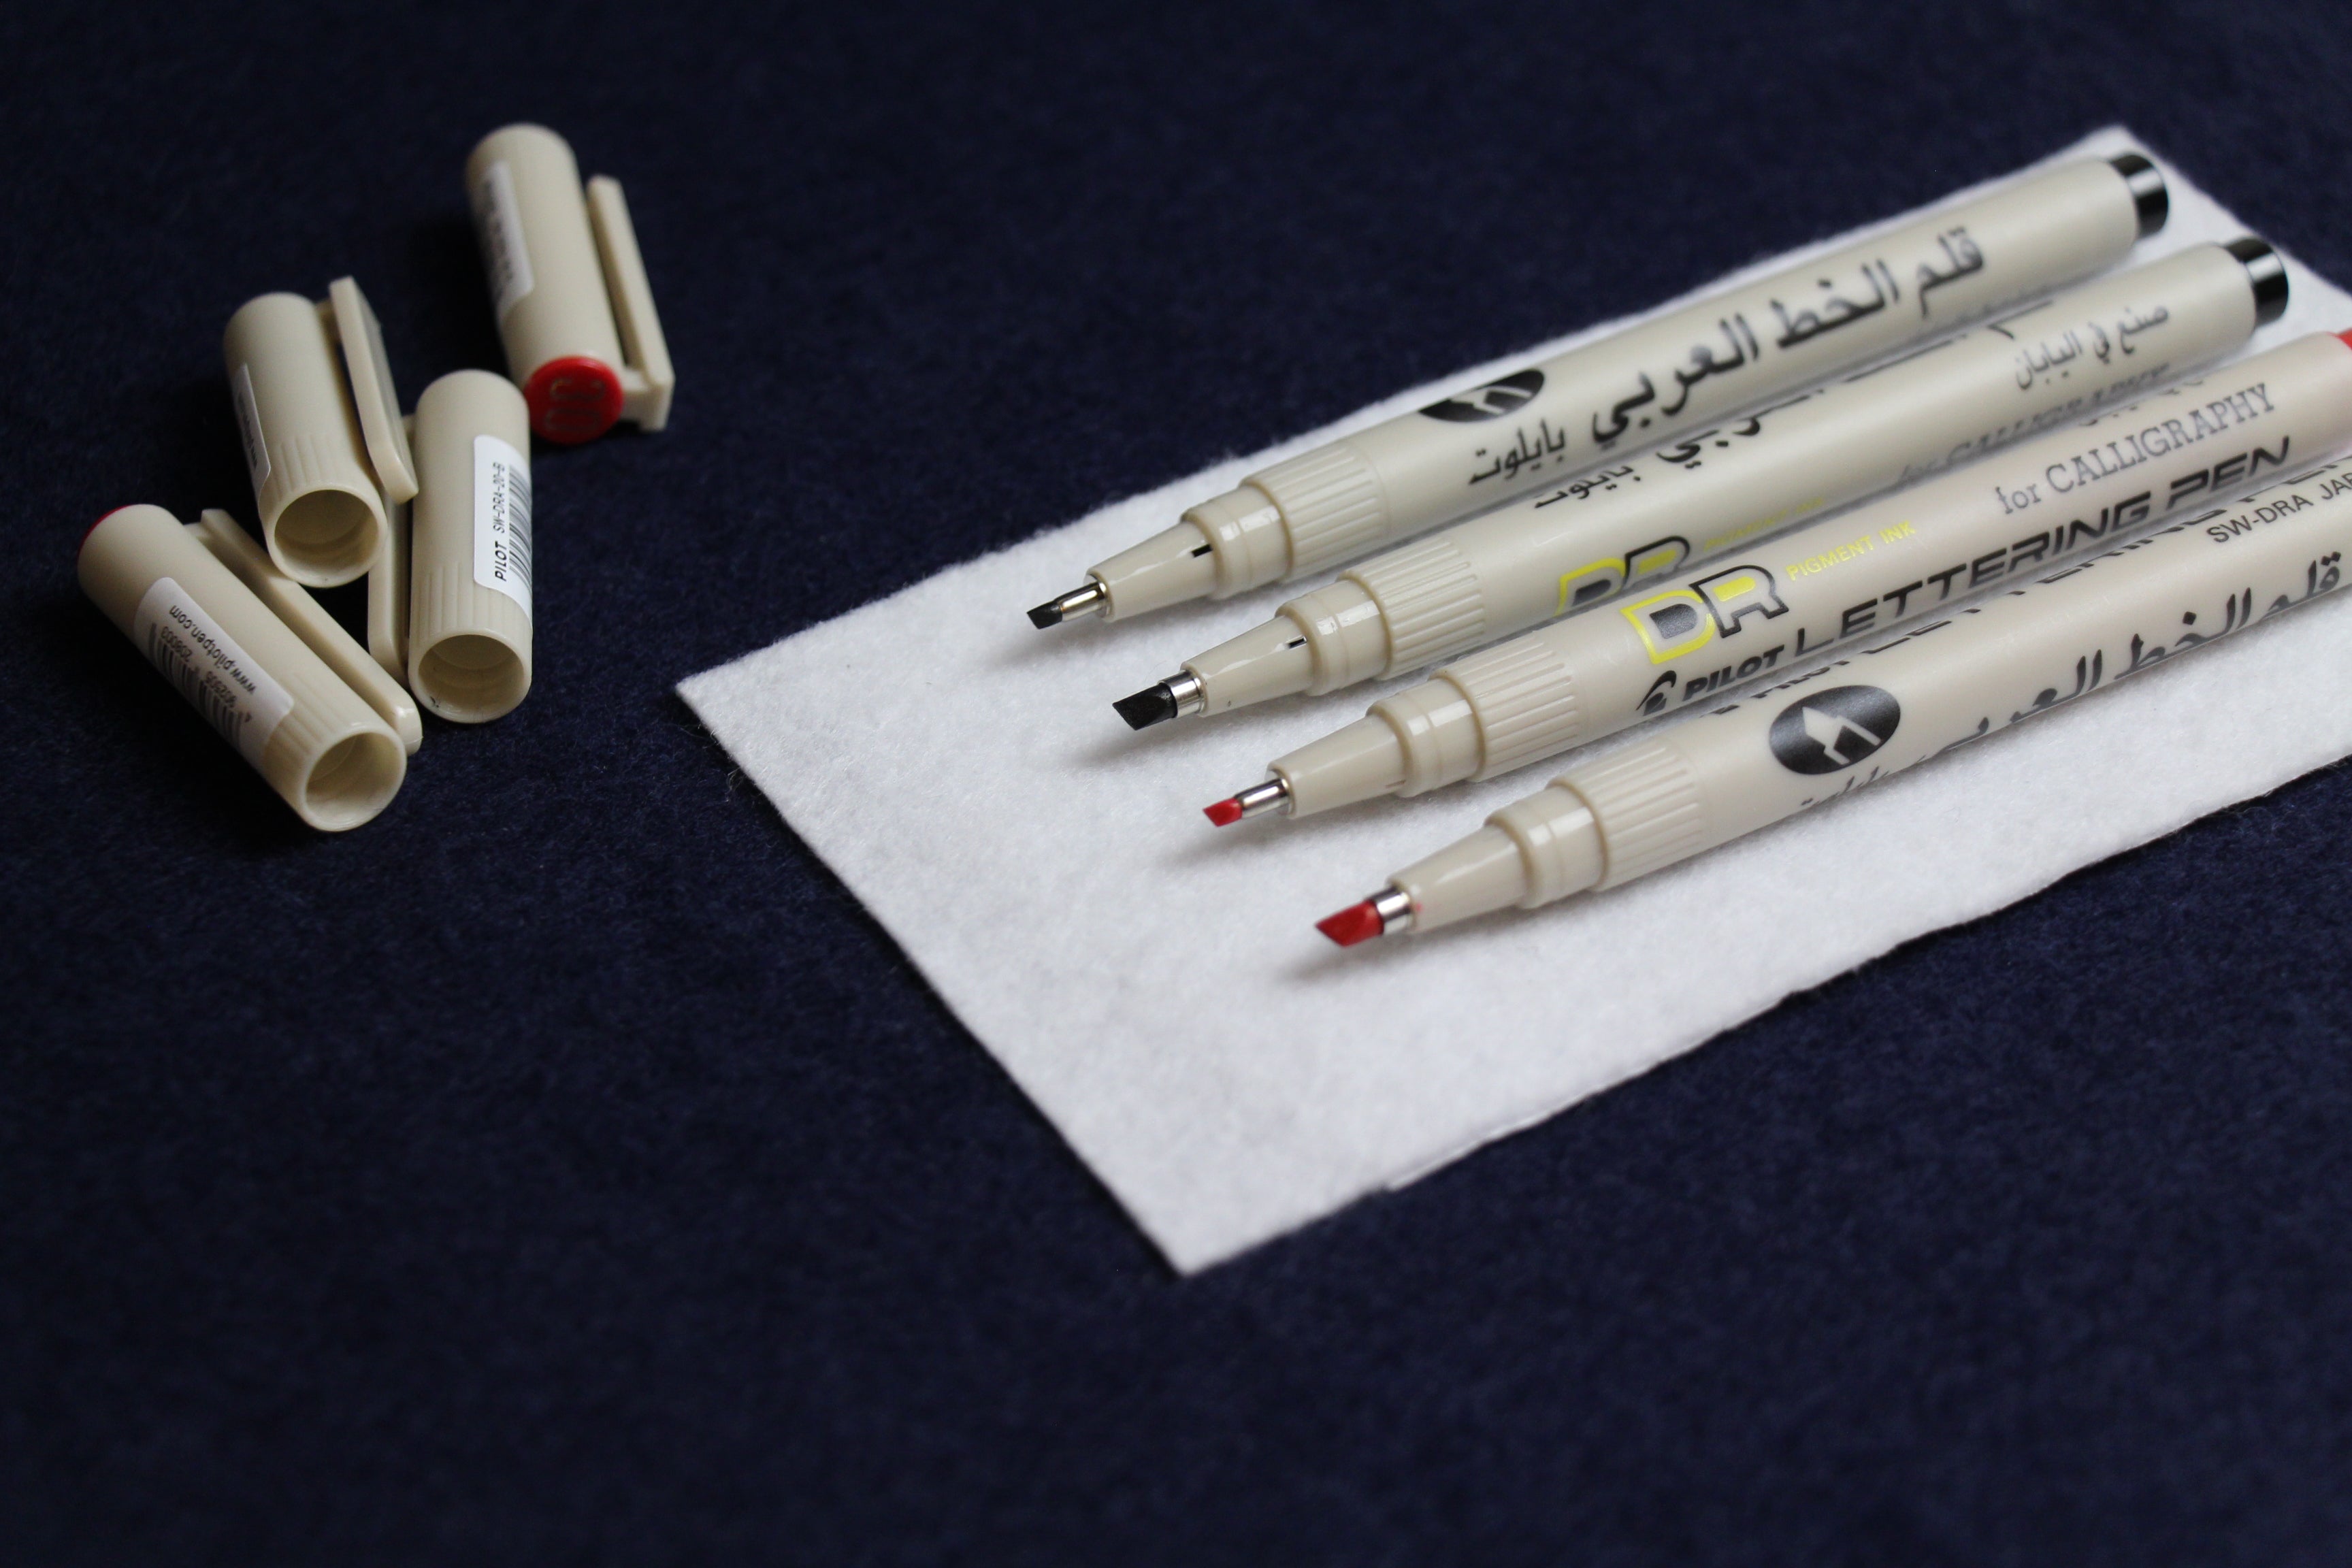 Pilot lettering pen with oblique nib for Arabic calligraphy – Arcalliq